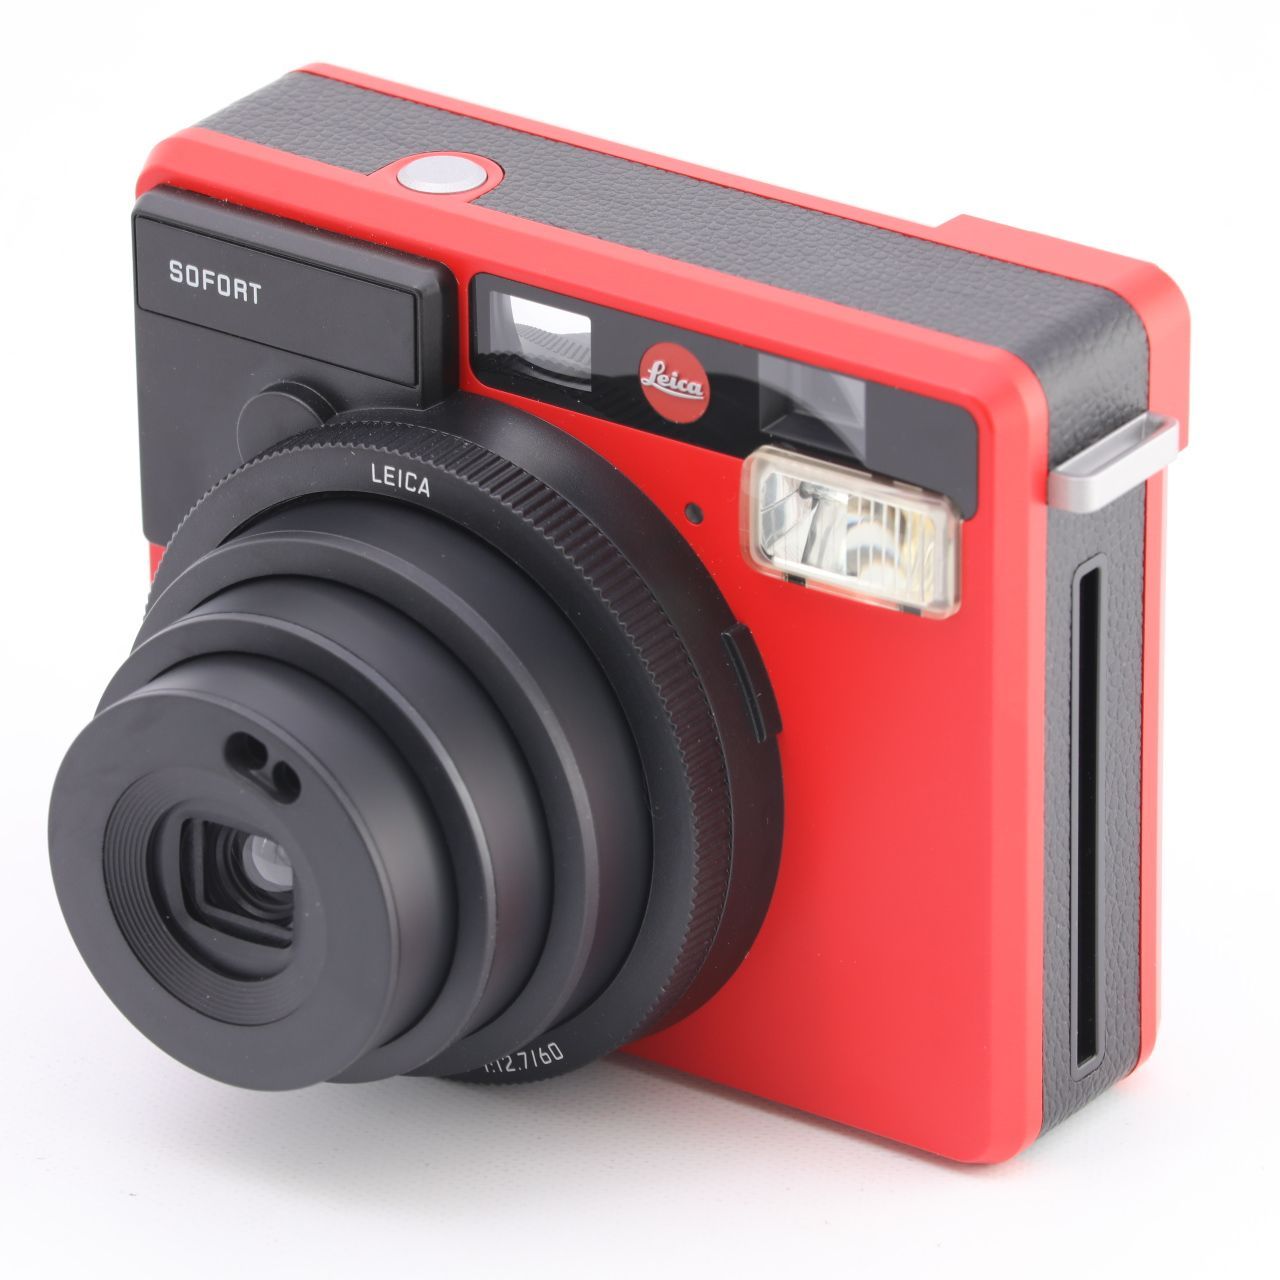 ほぼ未使用】ライカ ゾフォート 赤 Leica SOFORT RED-